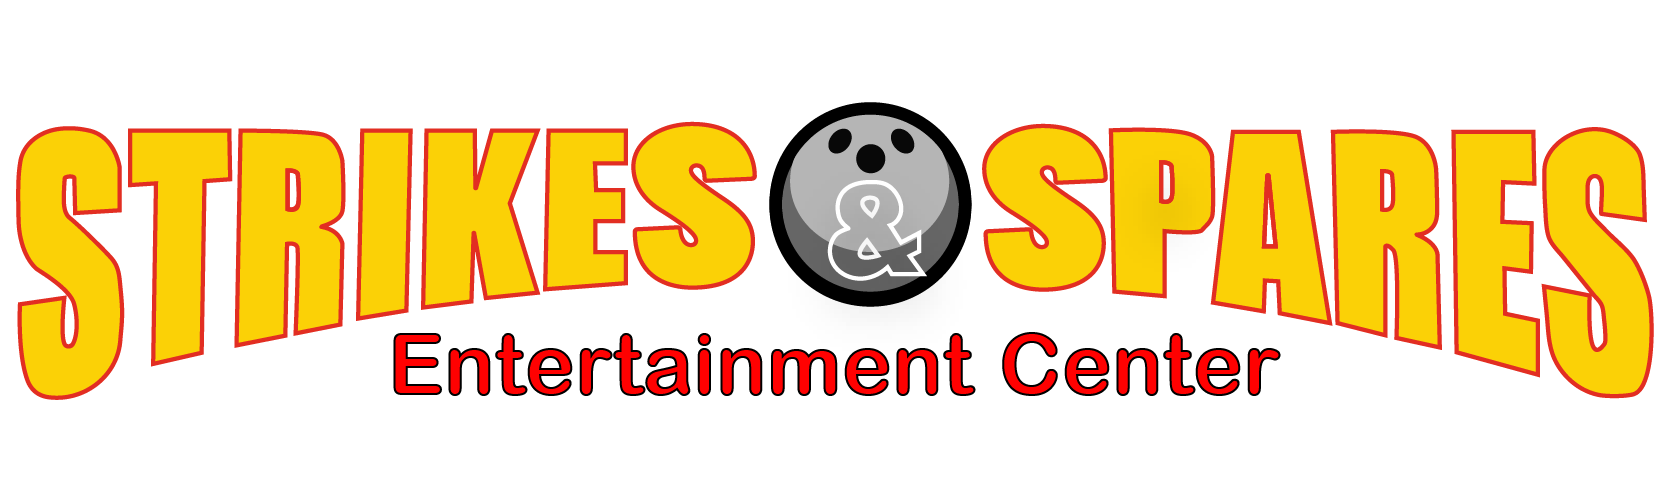 Strikes & Spares Entertainment Center